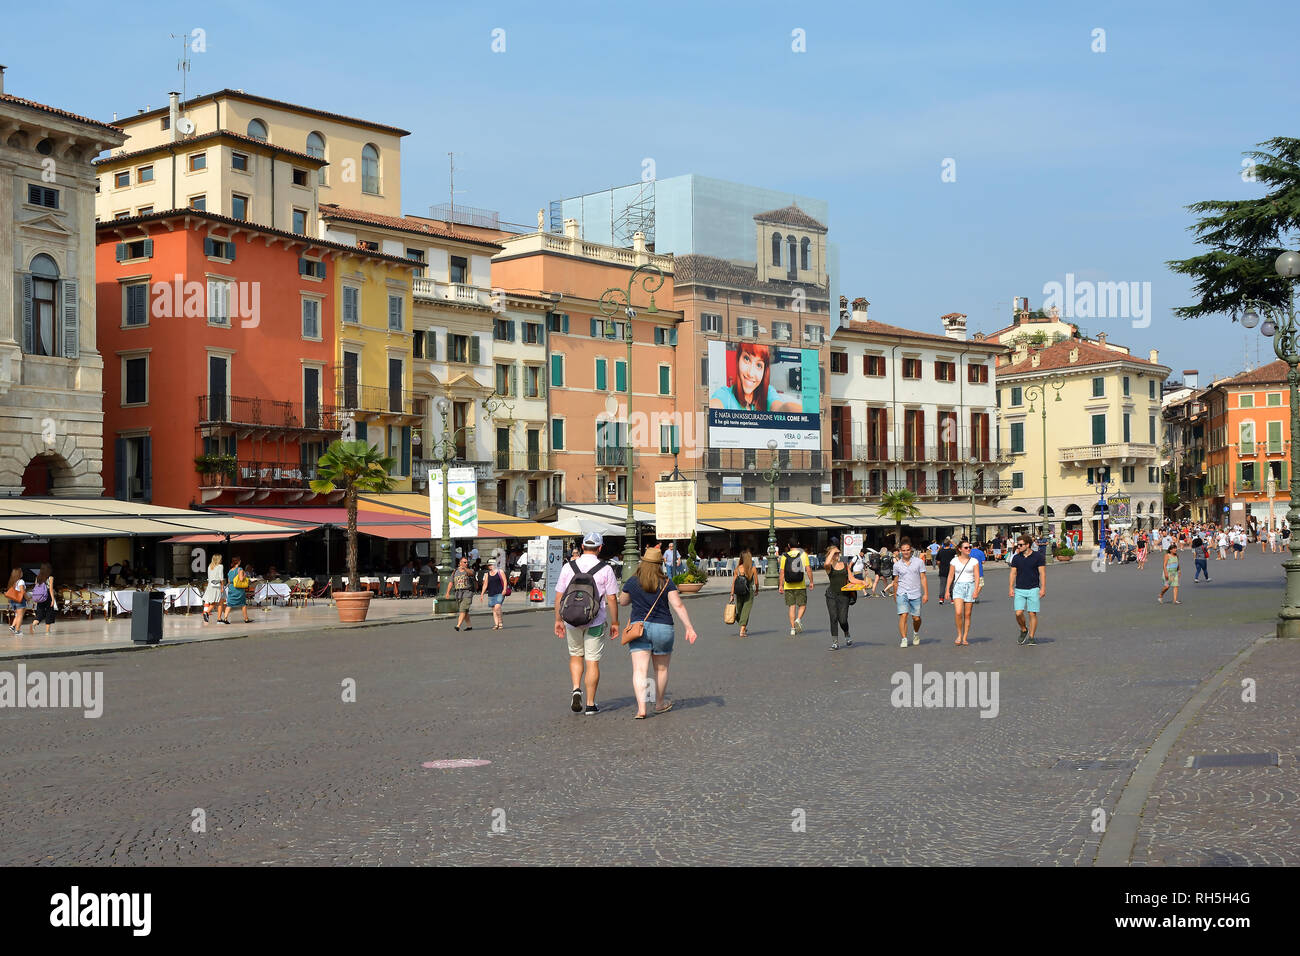 La gente in Piazza Bra, nel centro storico di Verona - Italia. Foto Stock